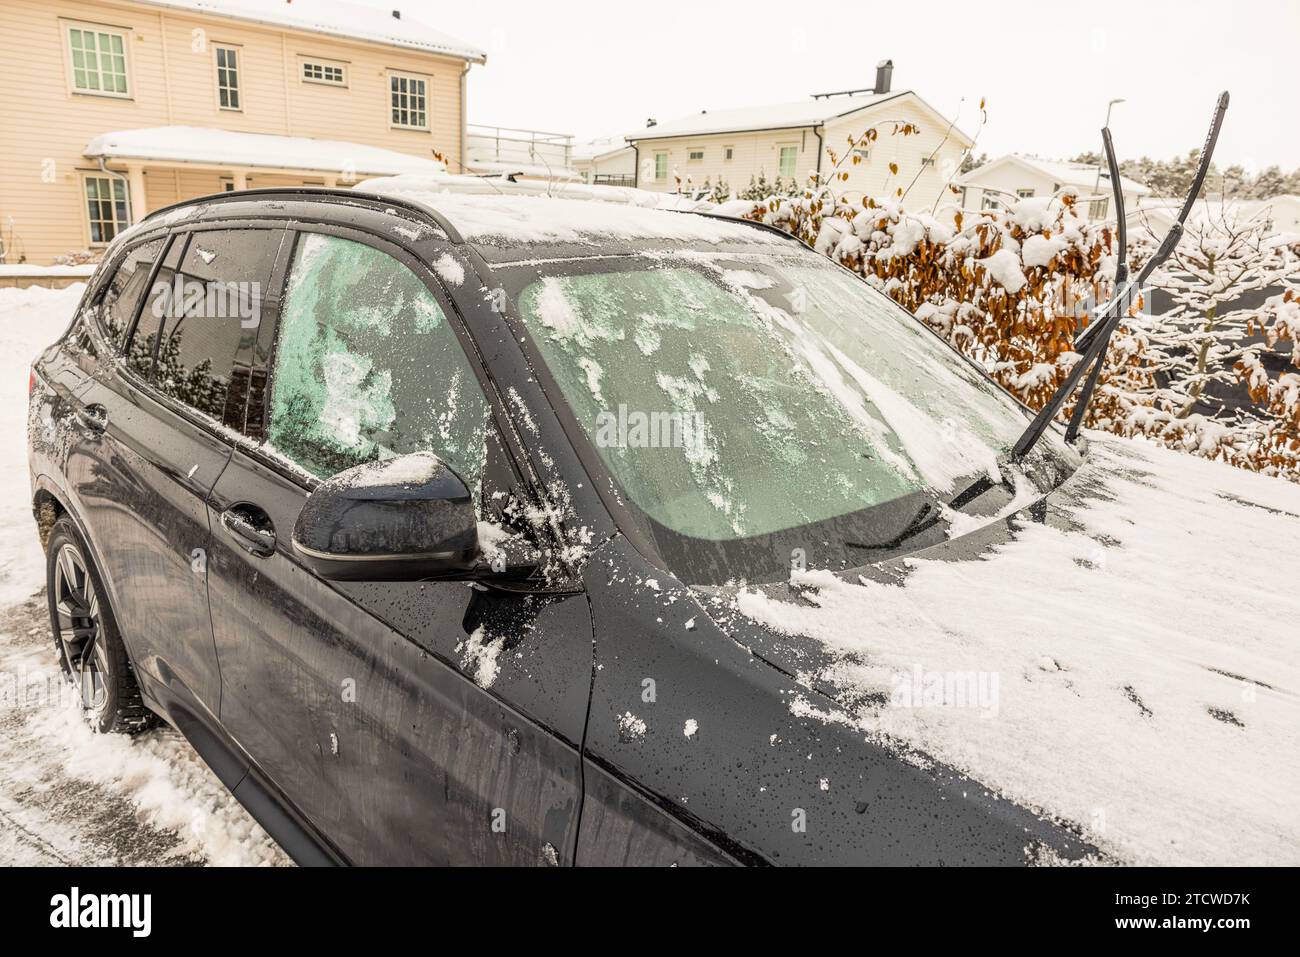 Vue d'une voiture dans la glace et la neige, avec des essuie-glaces surélevés par une froide journée d'hiver. Suède. Banque D'Images